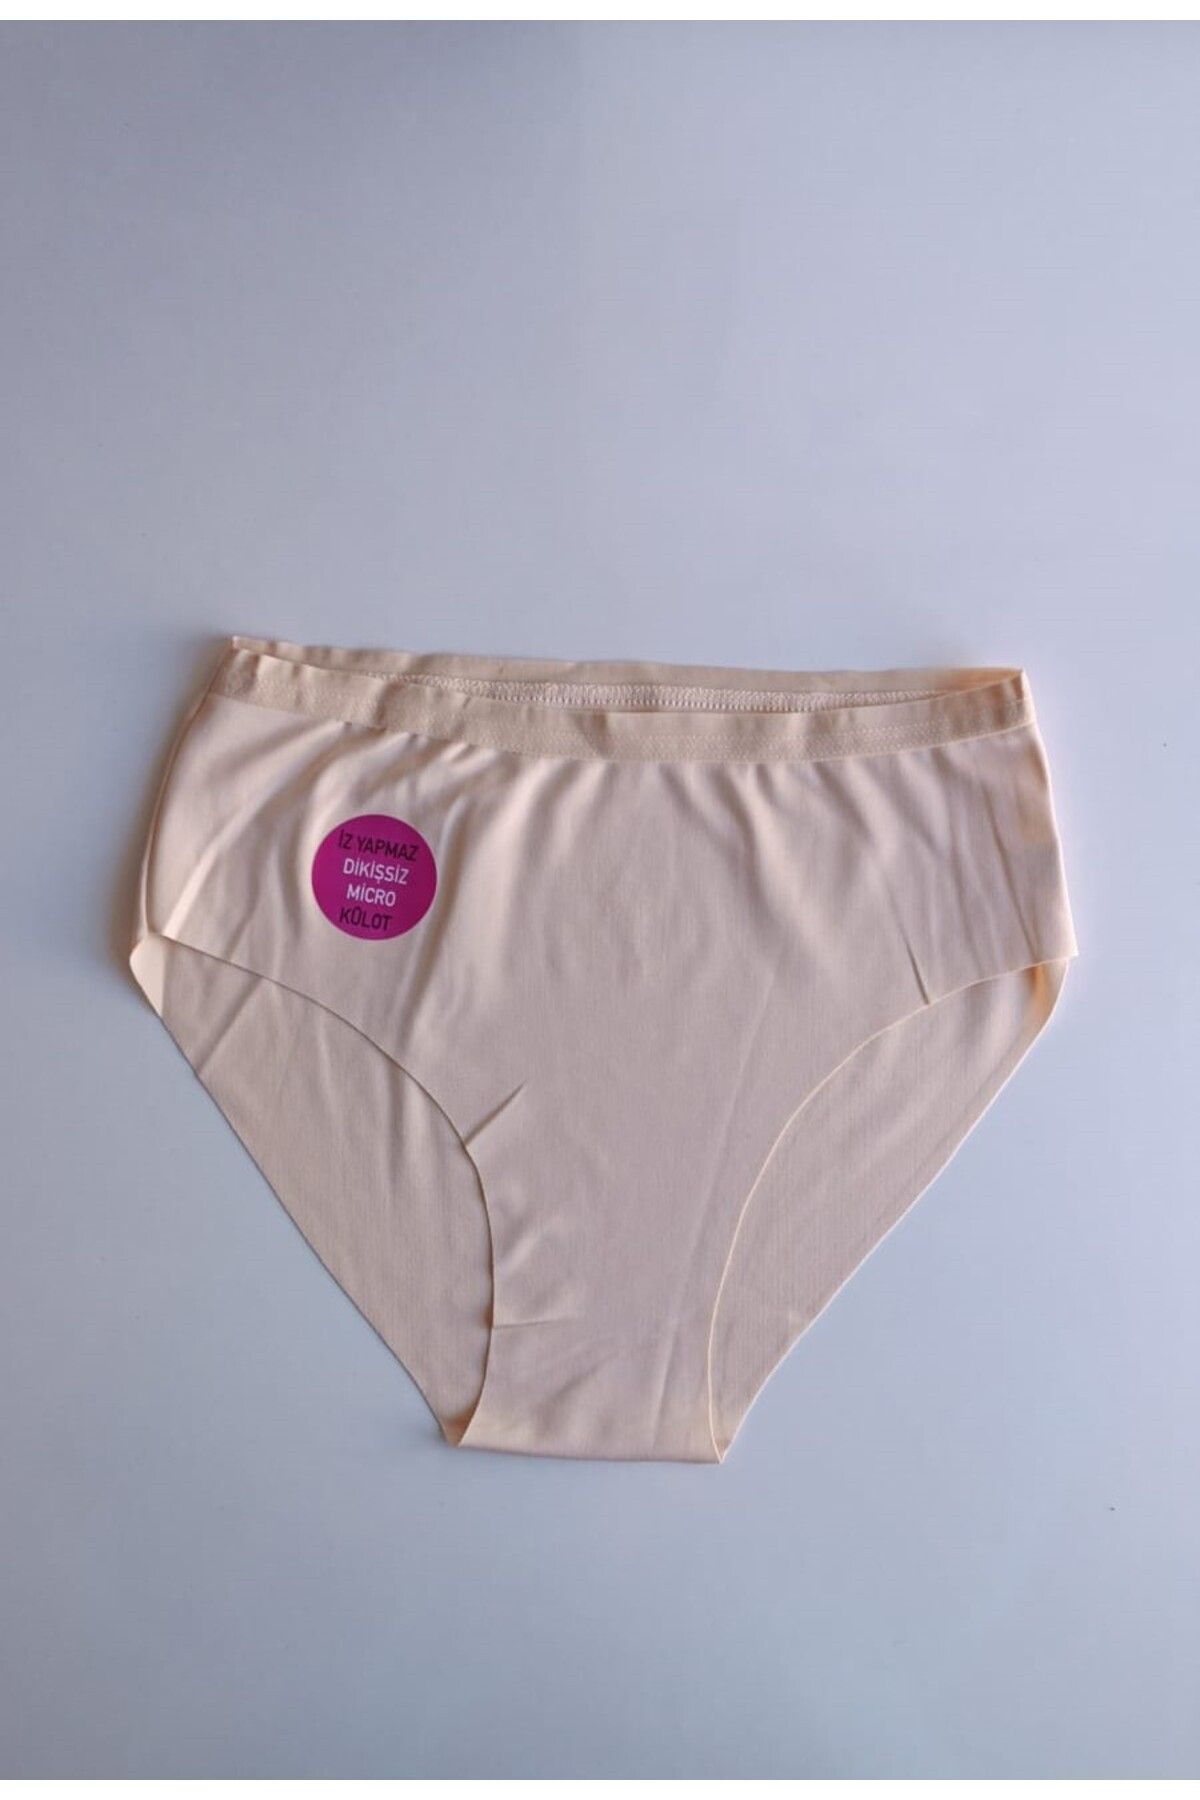 Dondeza Beli Lastikli Kadın Normal Bel Dikişsiz Külot İz Yapmayan Yumuşak Mikro Kumaş Bikini Külot M